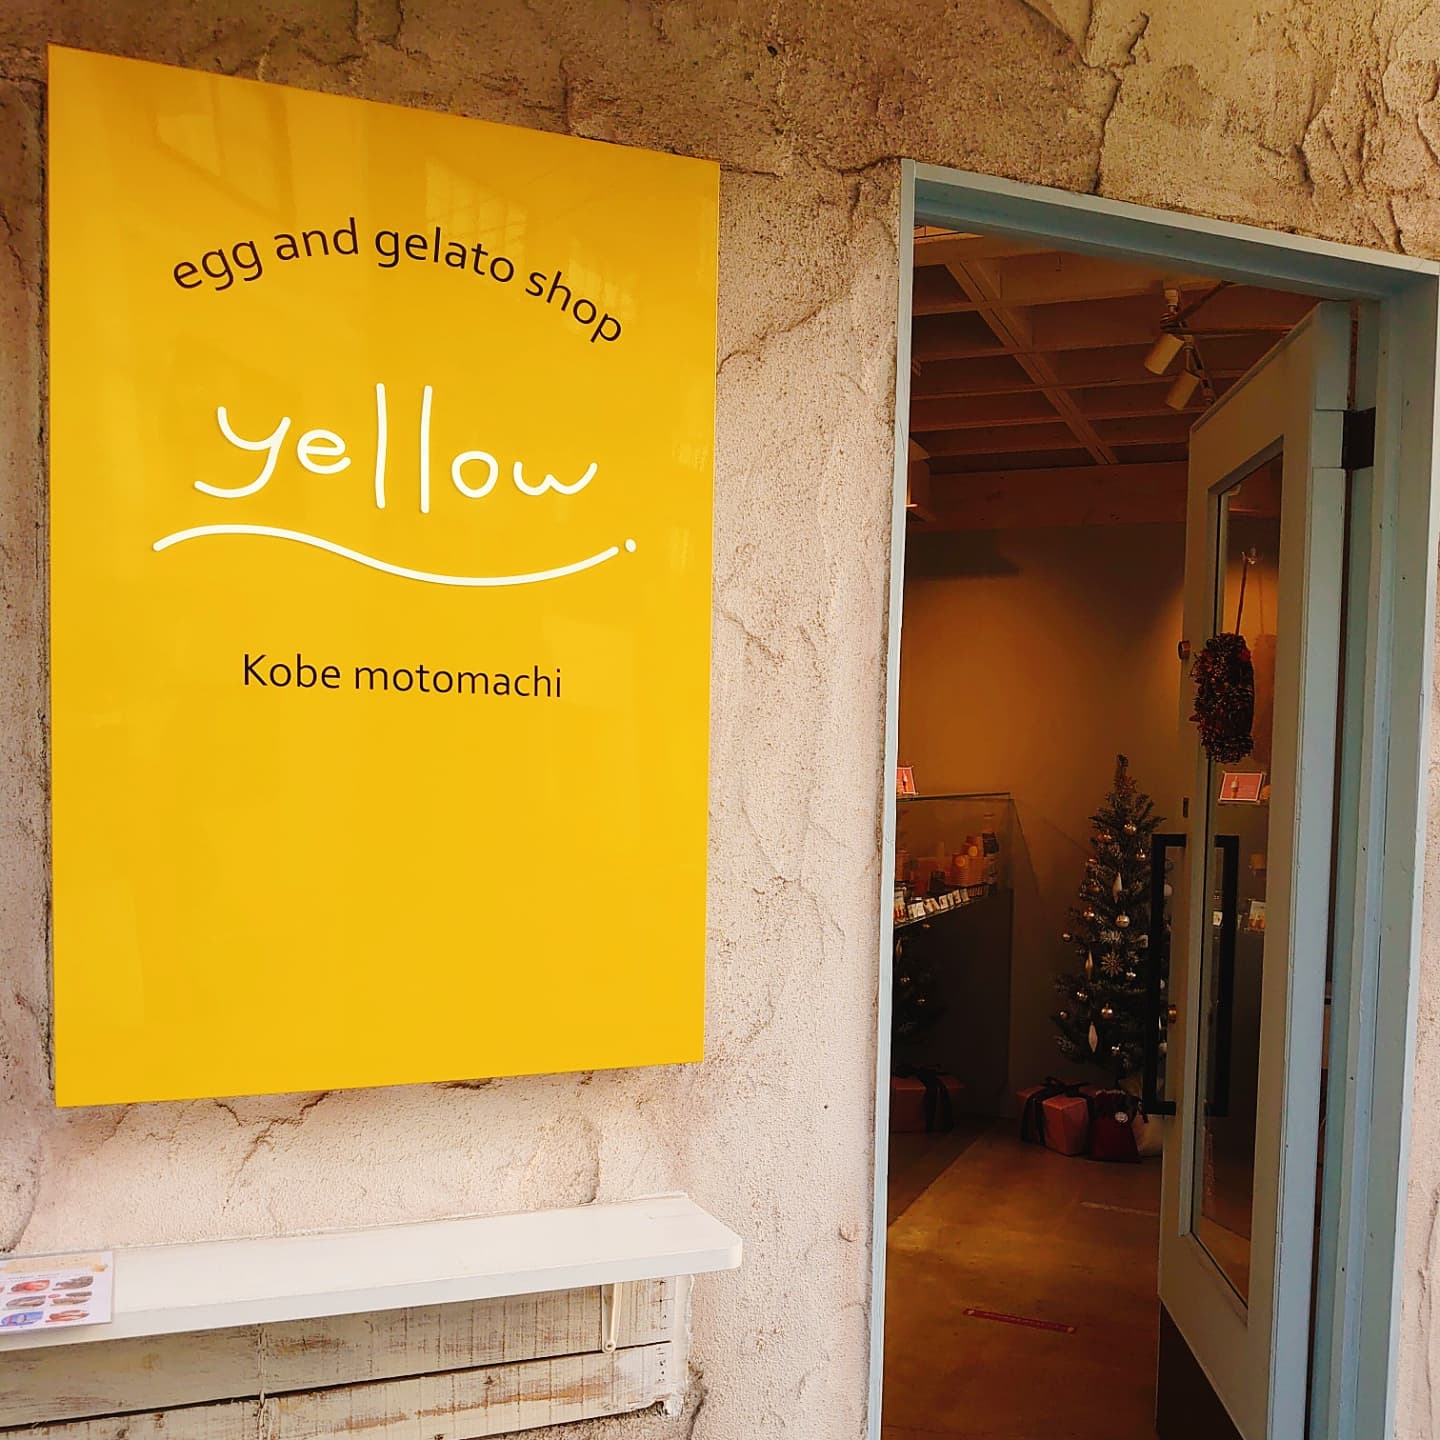 【yellow】タマゴ屋さんが作った濃厚なジェラートが美味い